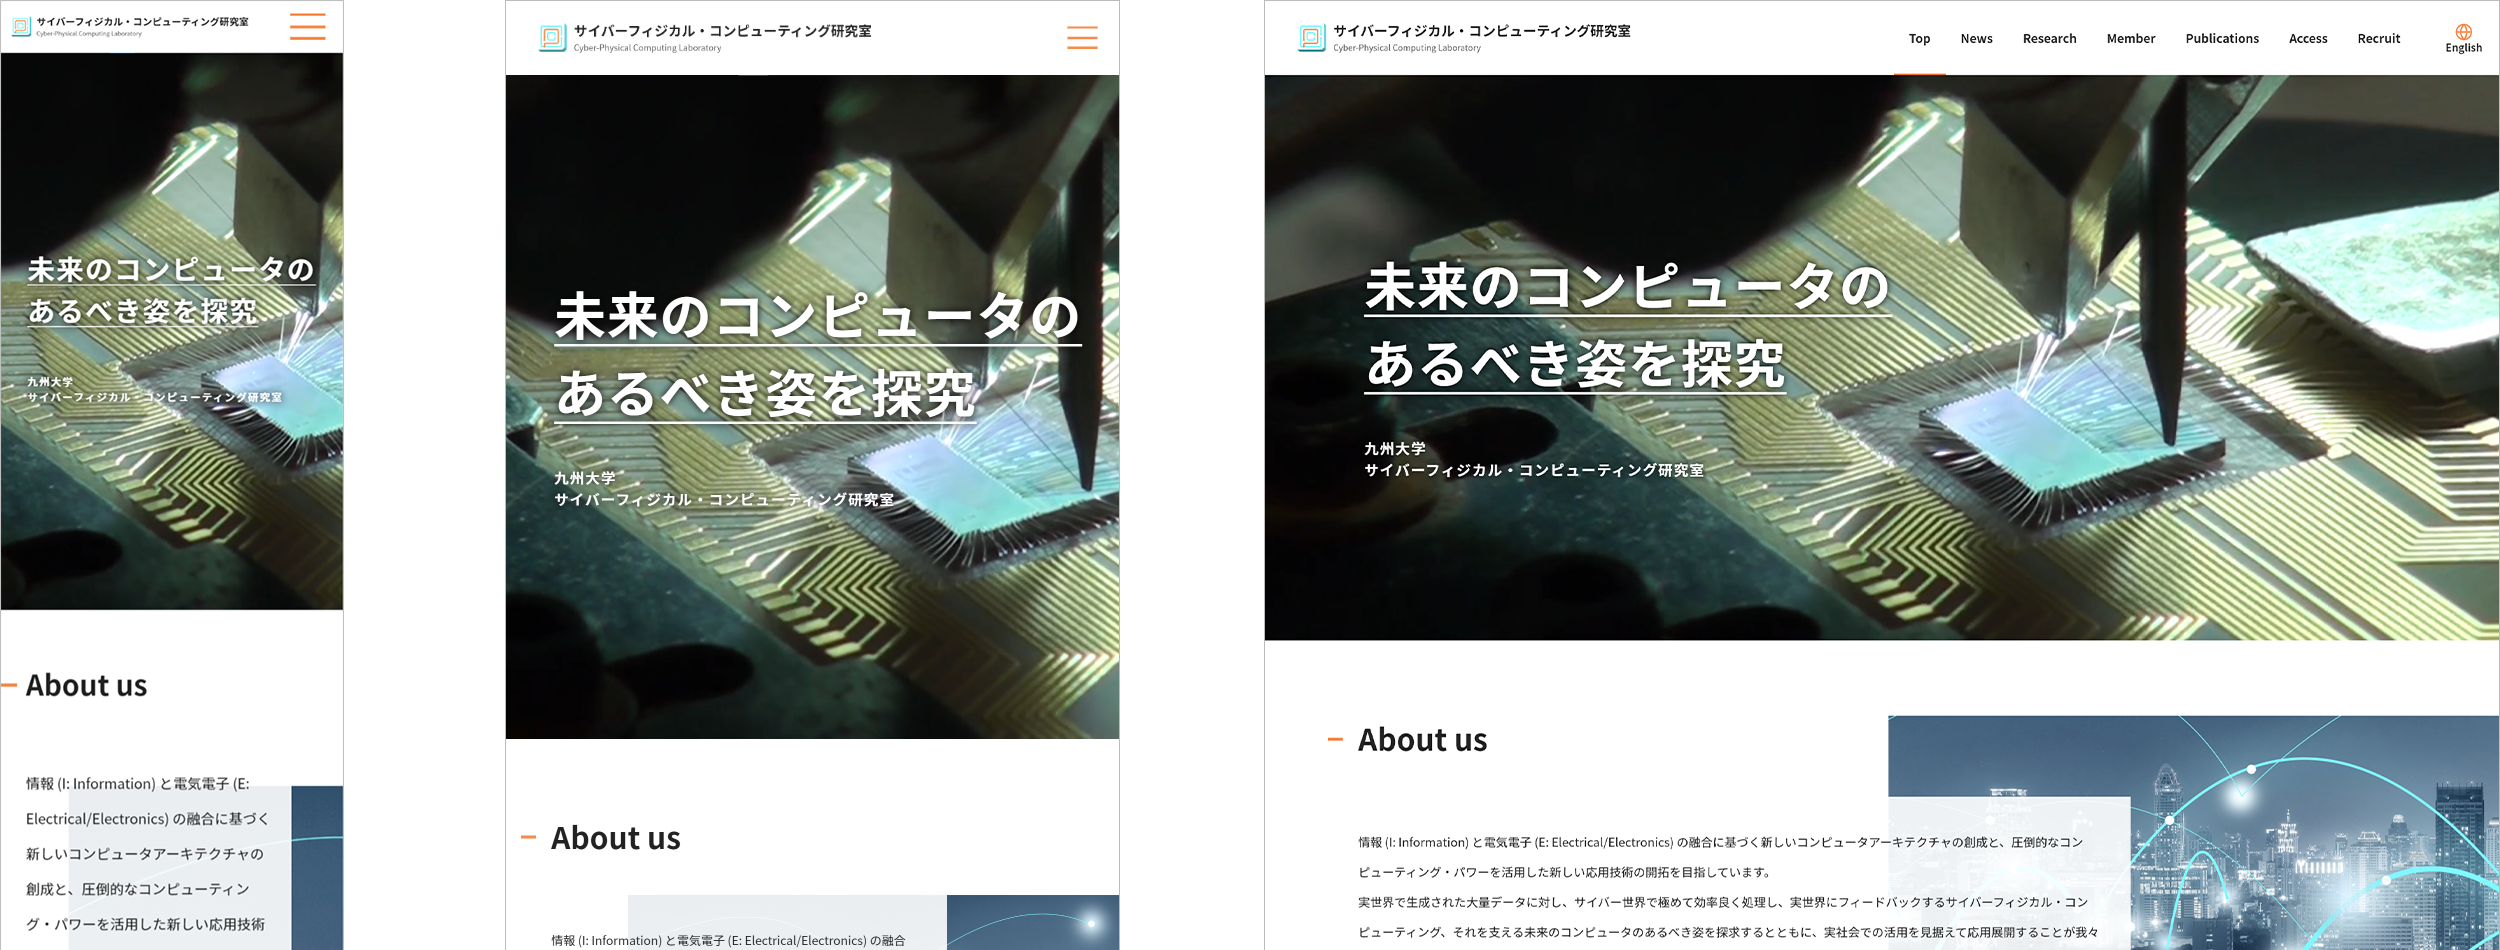 九州大学 サイバーフィジカル・コンピューティング研究室様 webサイト